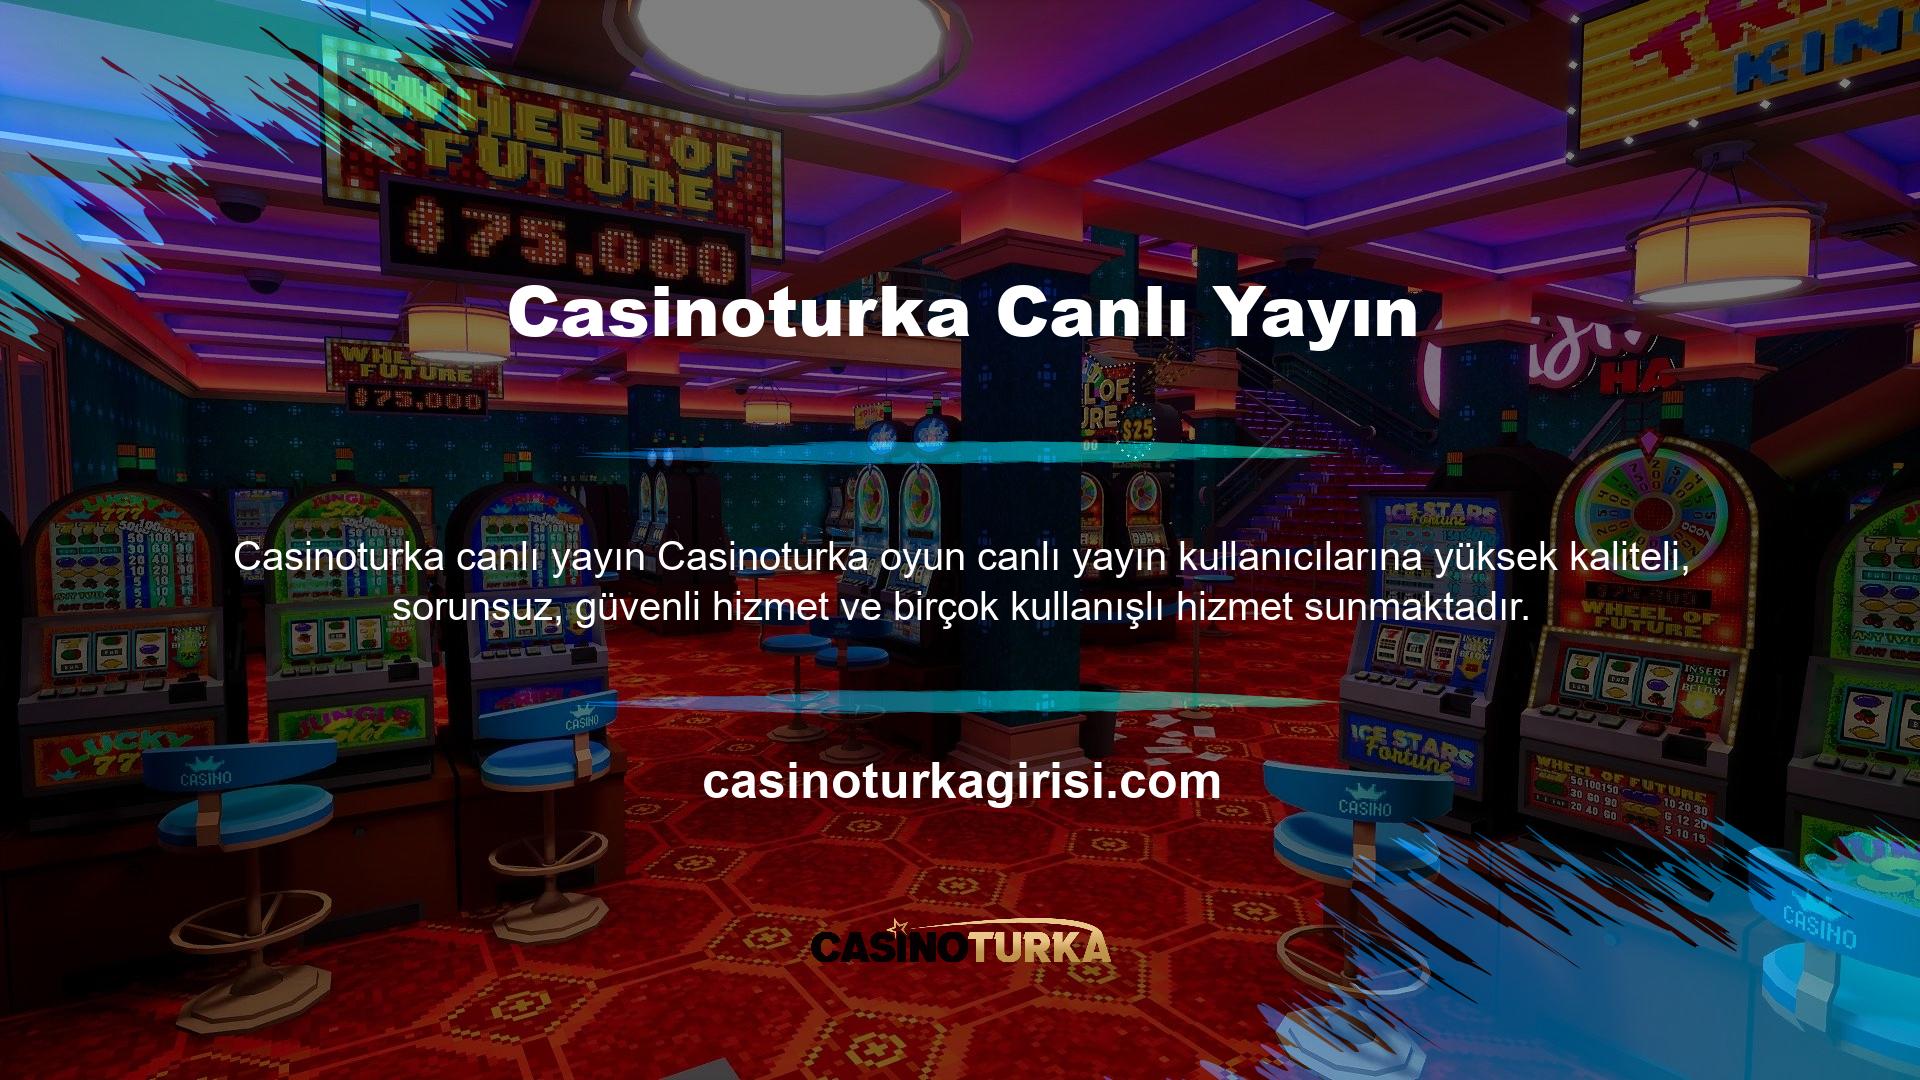 Casinoturka maçları full HD olarak canlı yayınlanacak, ancak Casinoturka TV'nin avantajlarından yalnızca üyeler yararlanabilecek